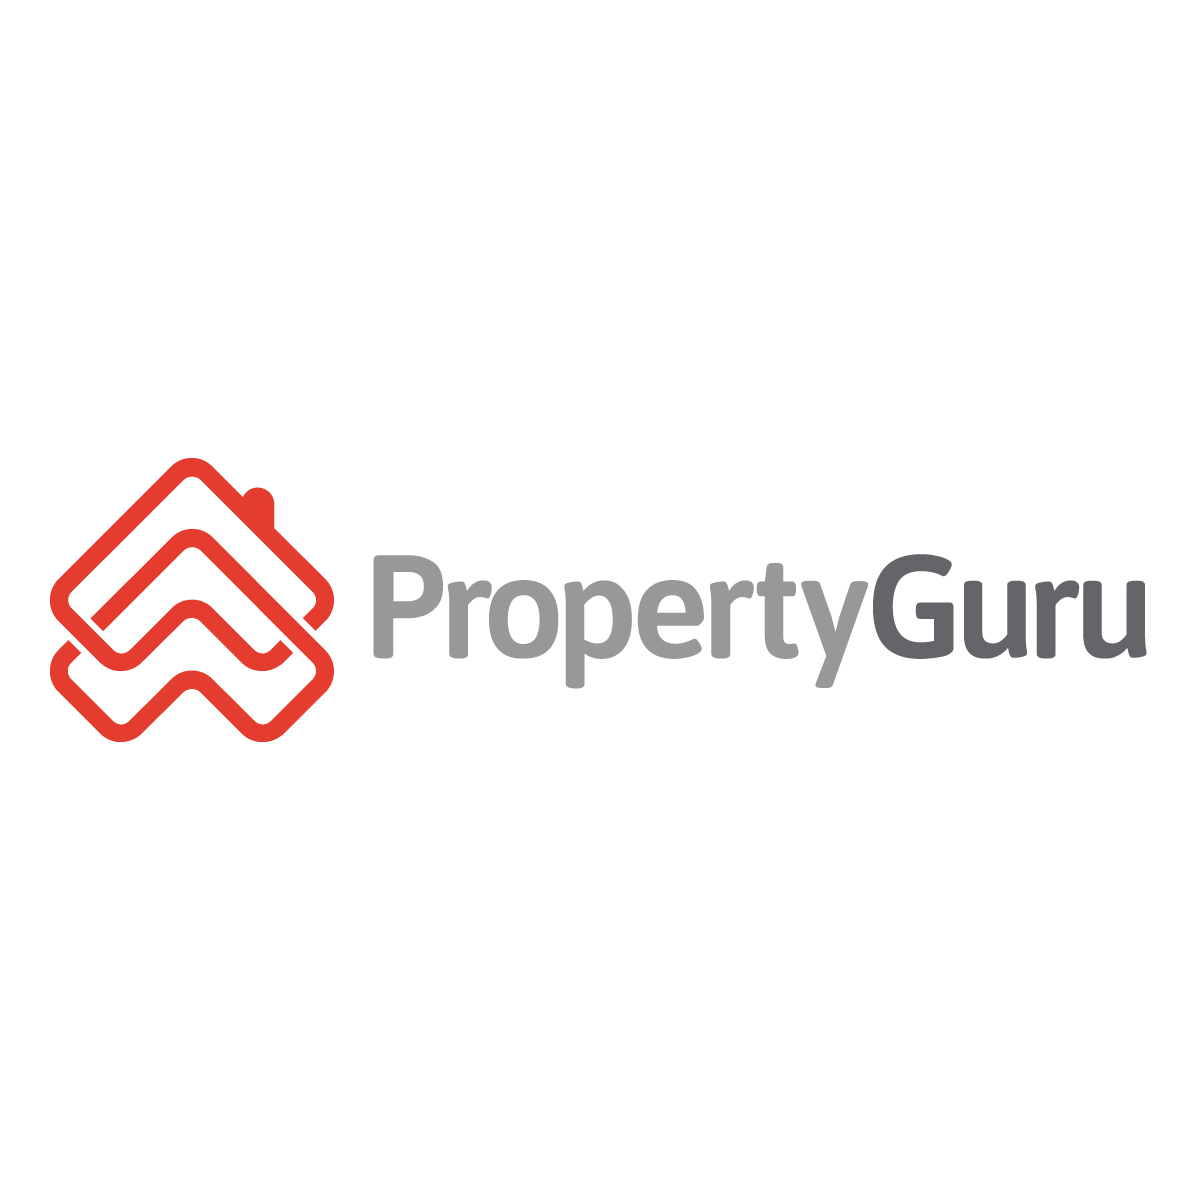 Propertyguru